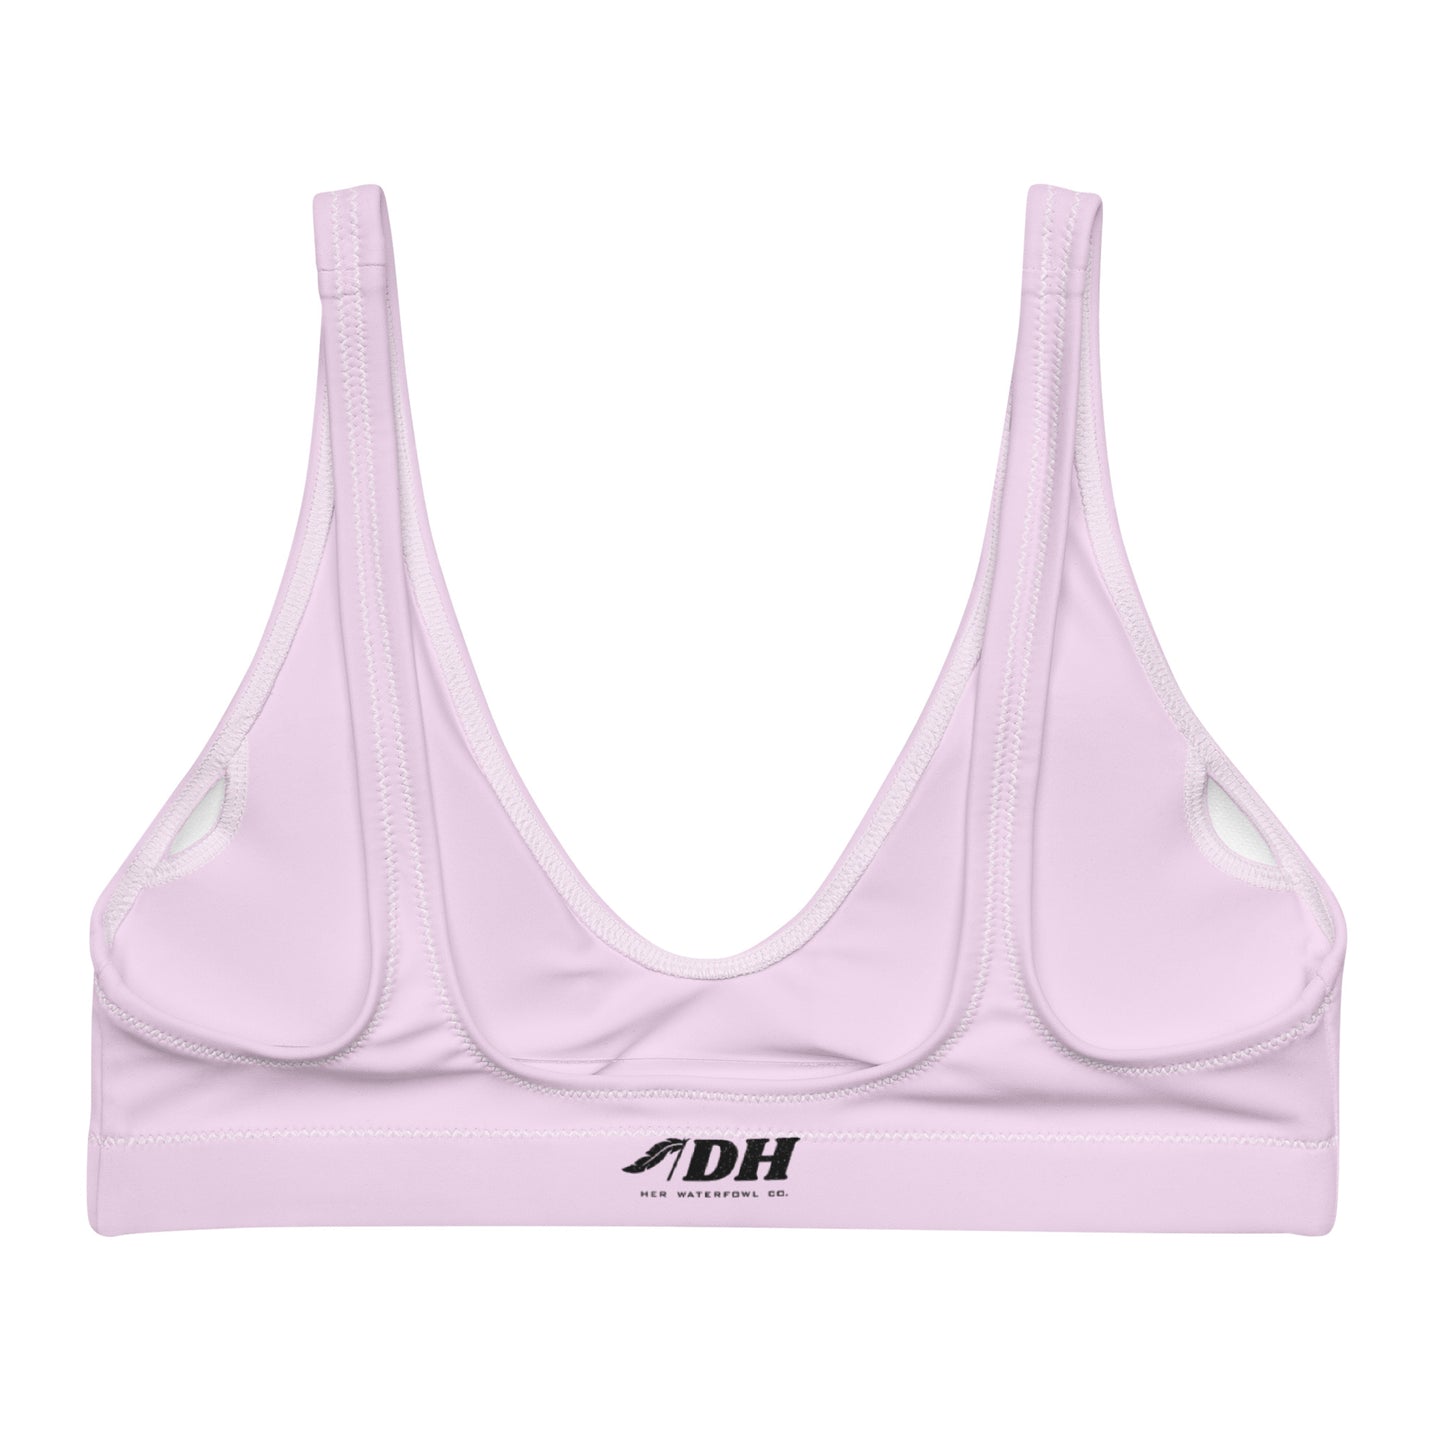 DH Lil' Debbie Prostaff Bikini Top in Light Pink